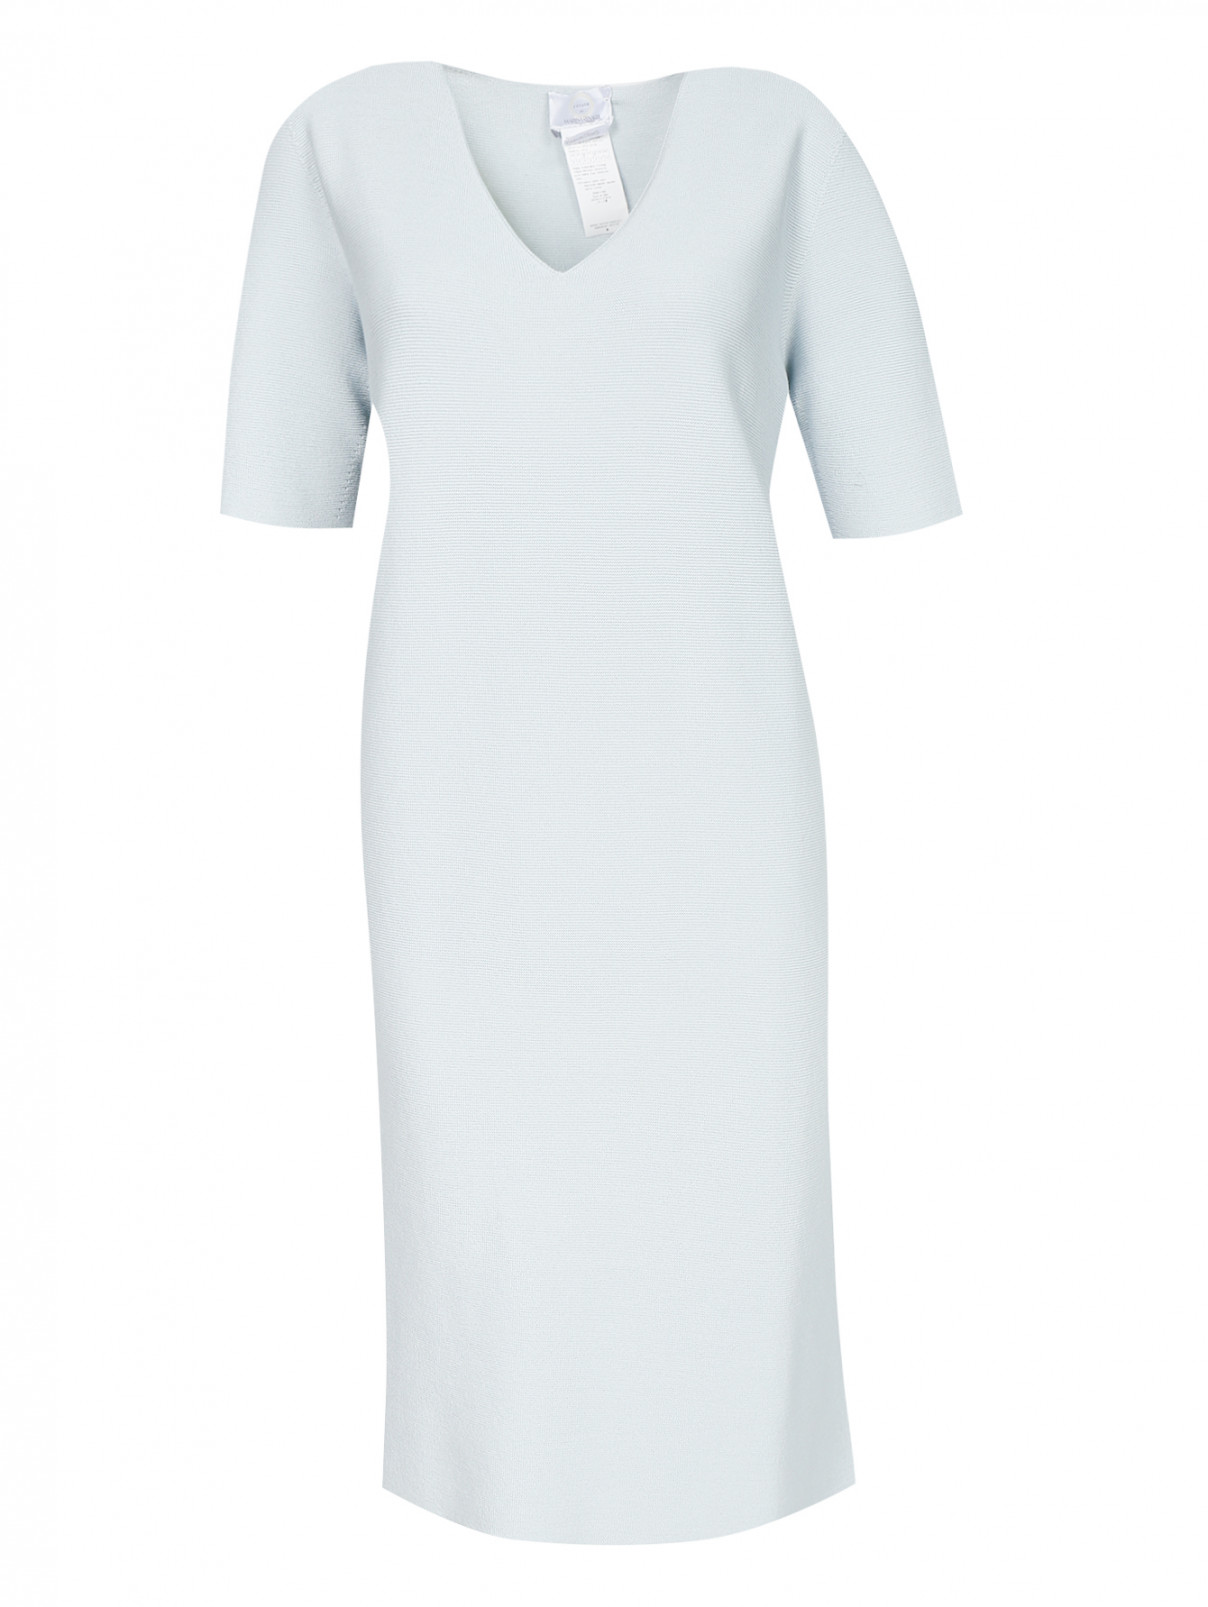 Трикотажное платье-мини с коротким рукавом Marina Rinaldi  –  Общий вид  – Цвет:  Синий